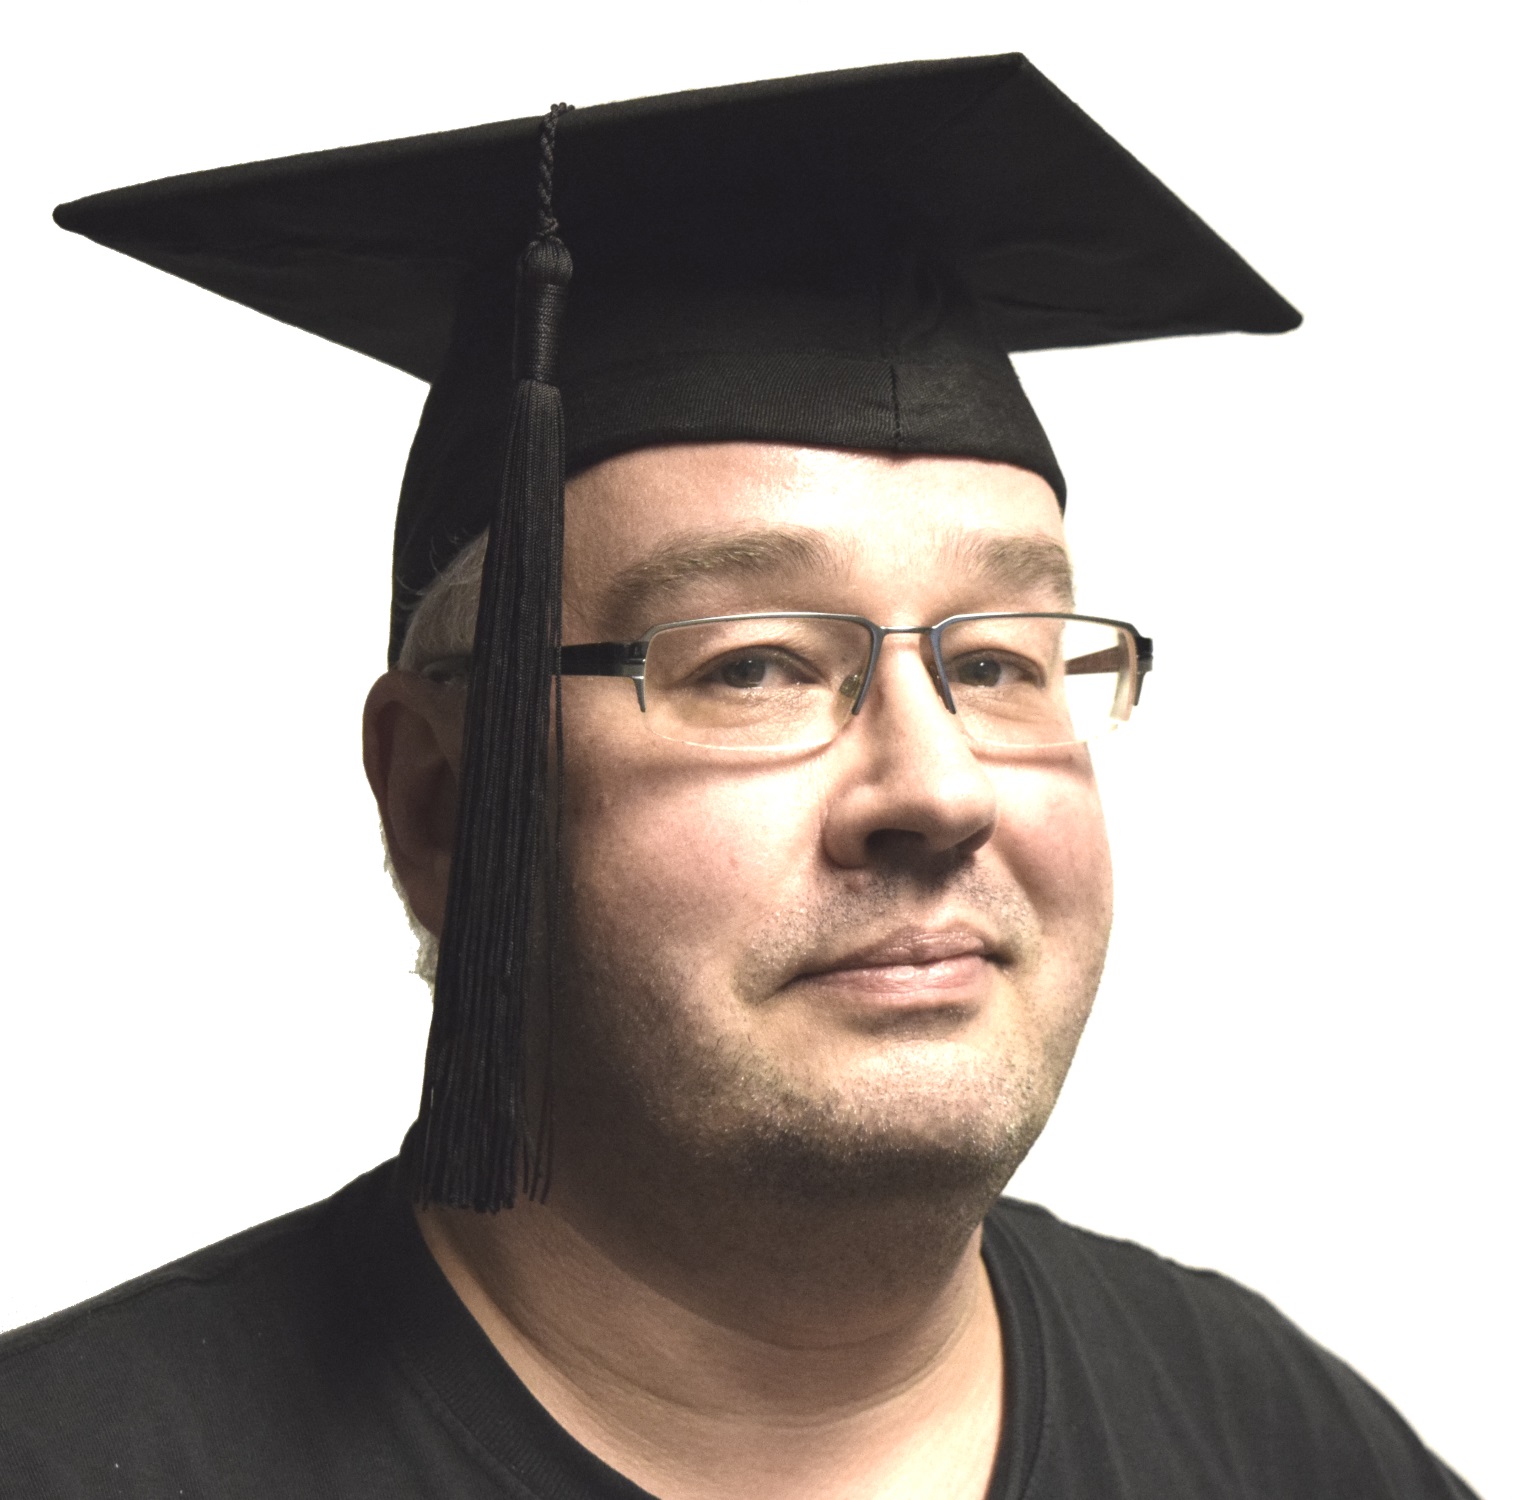 Kokott LUXE Doktorhut Schwarz mit Tassel, Graduation Cap in verschiedenen Größen